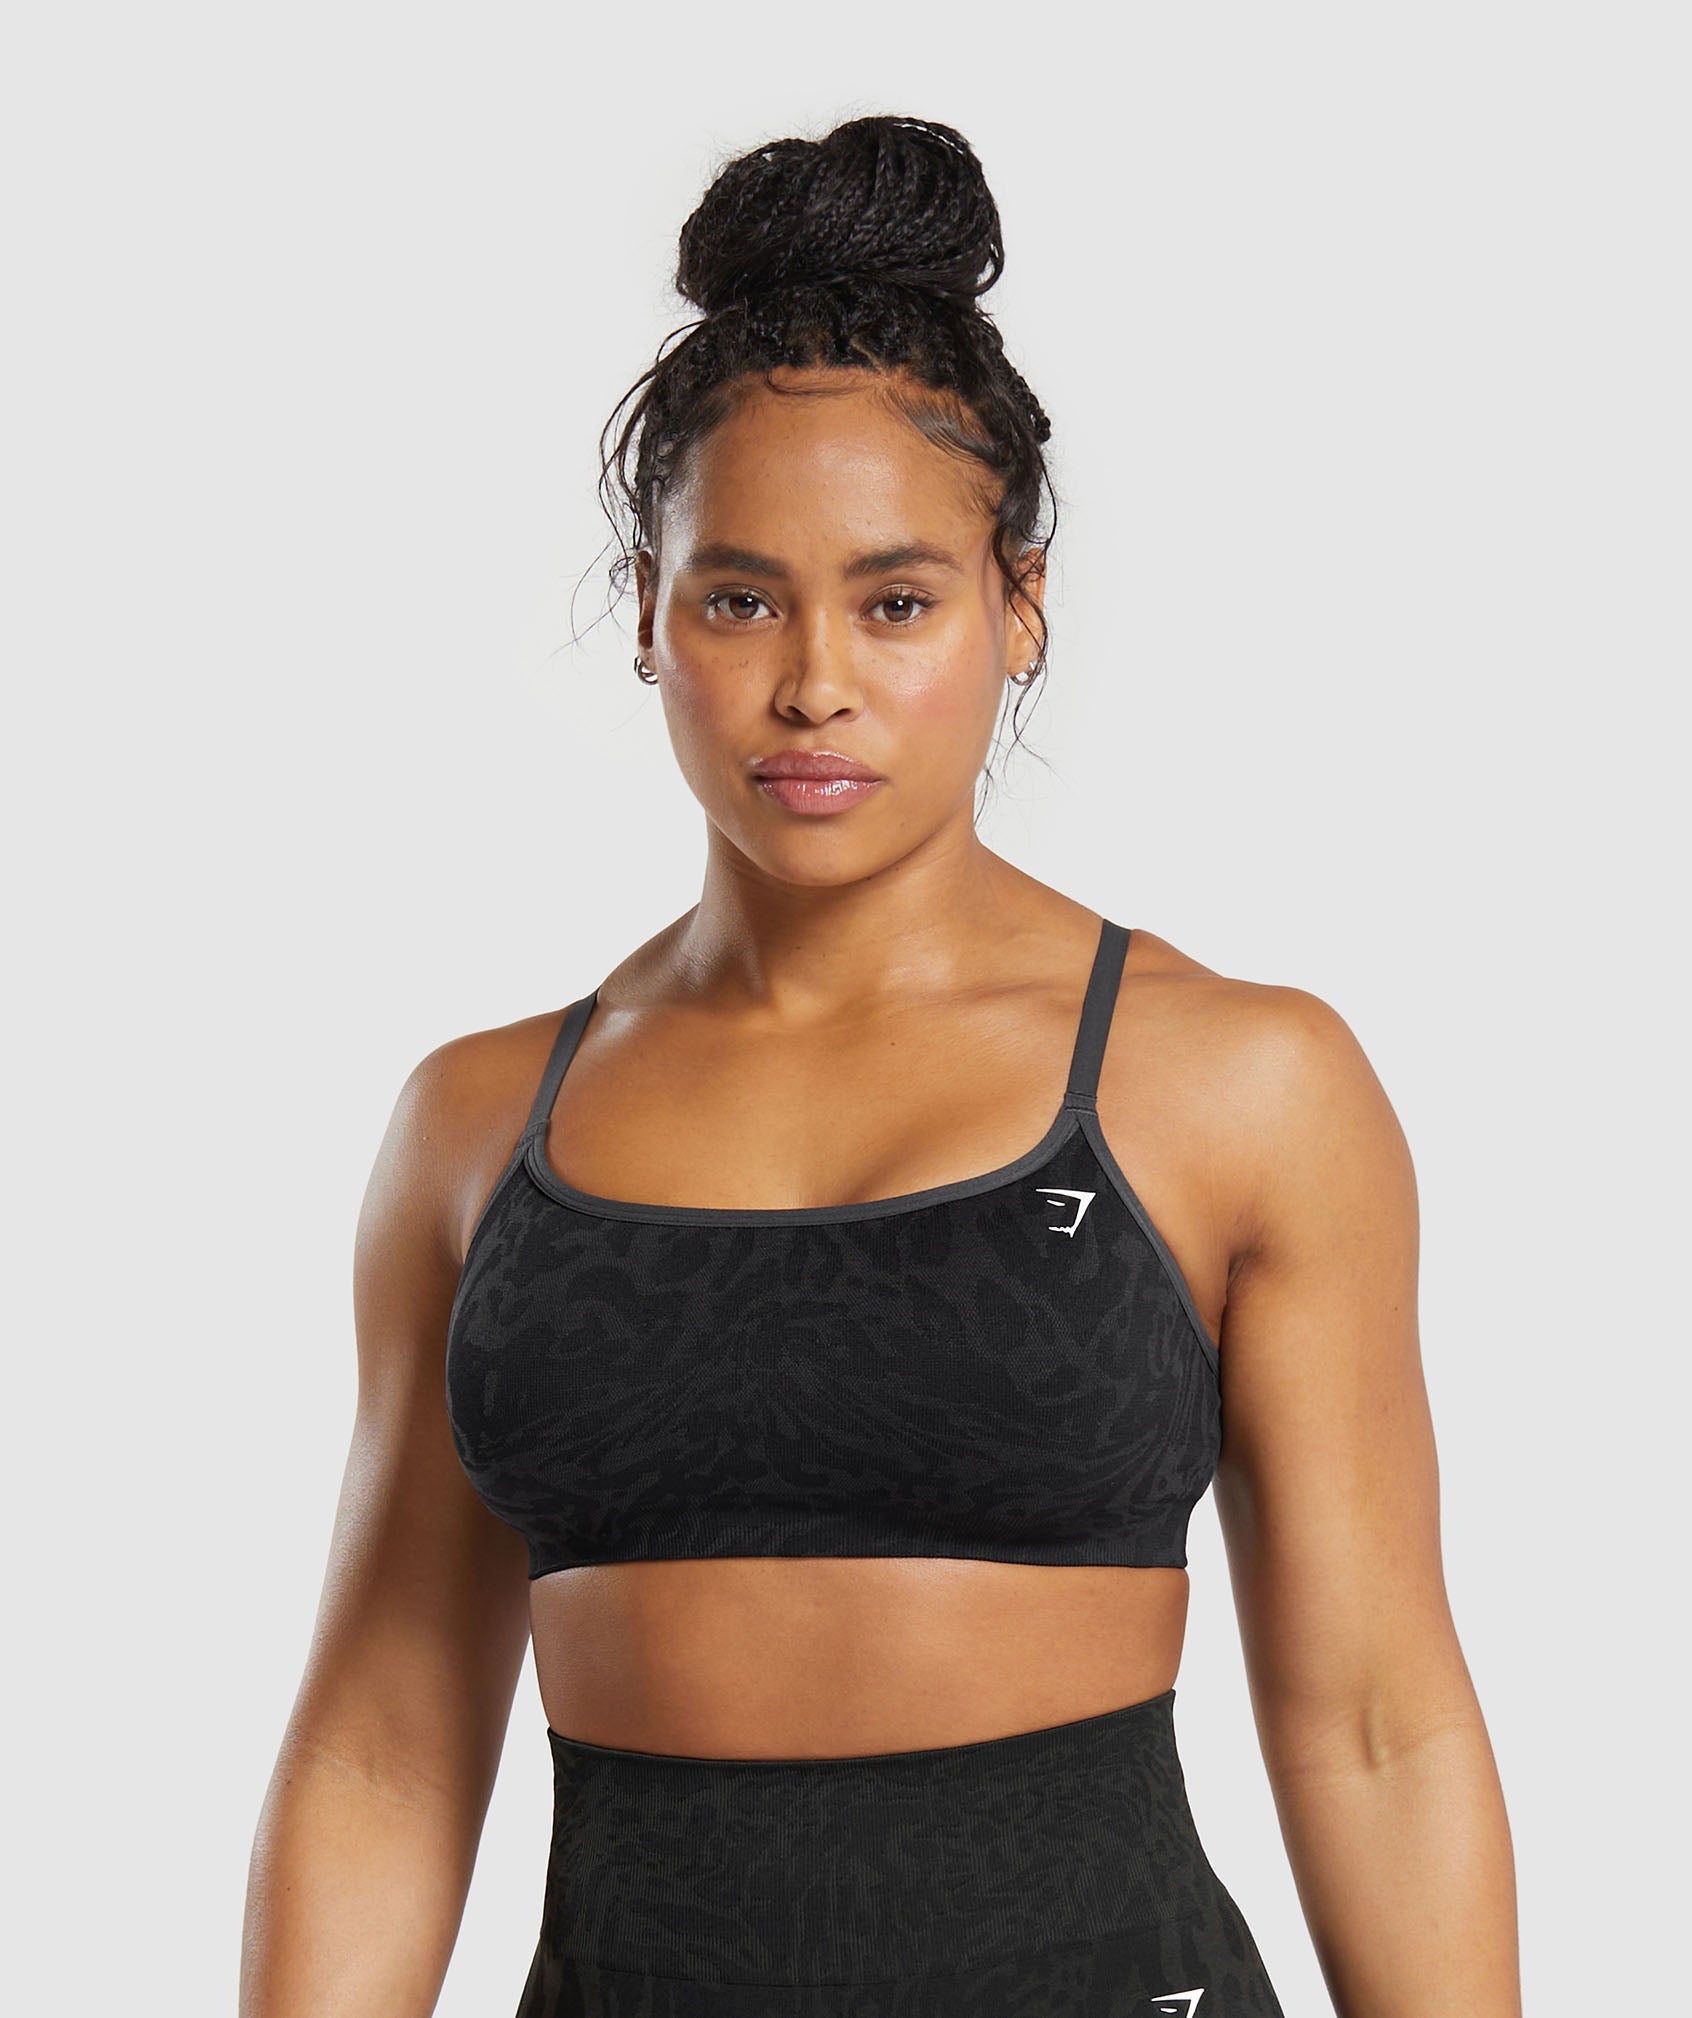 New Balance sport bra size XXL  Clothes design, Sports bra sizing, Sports  bra